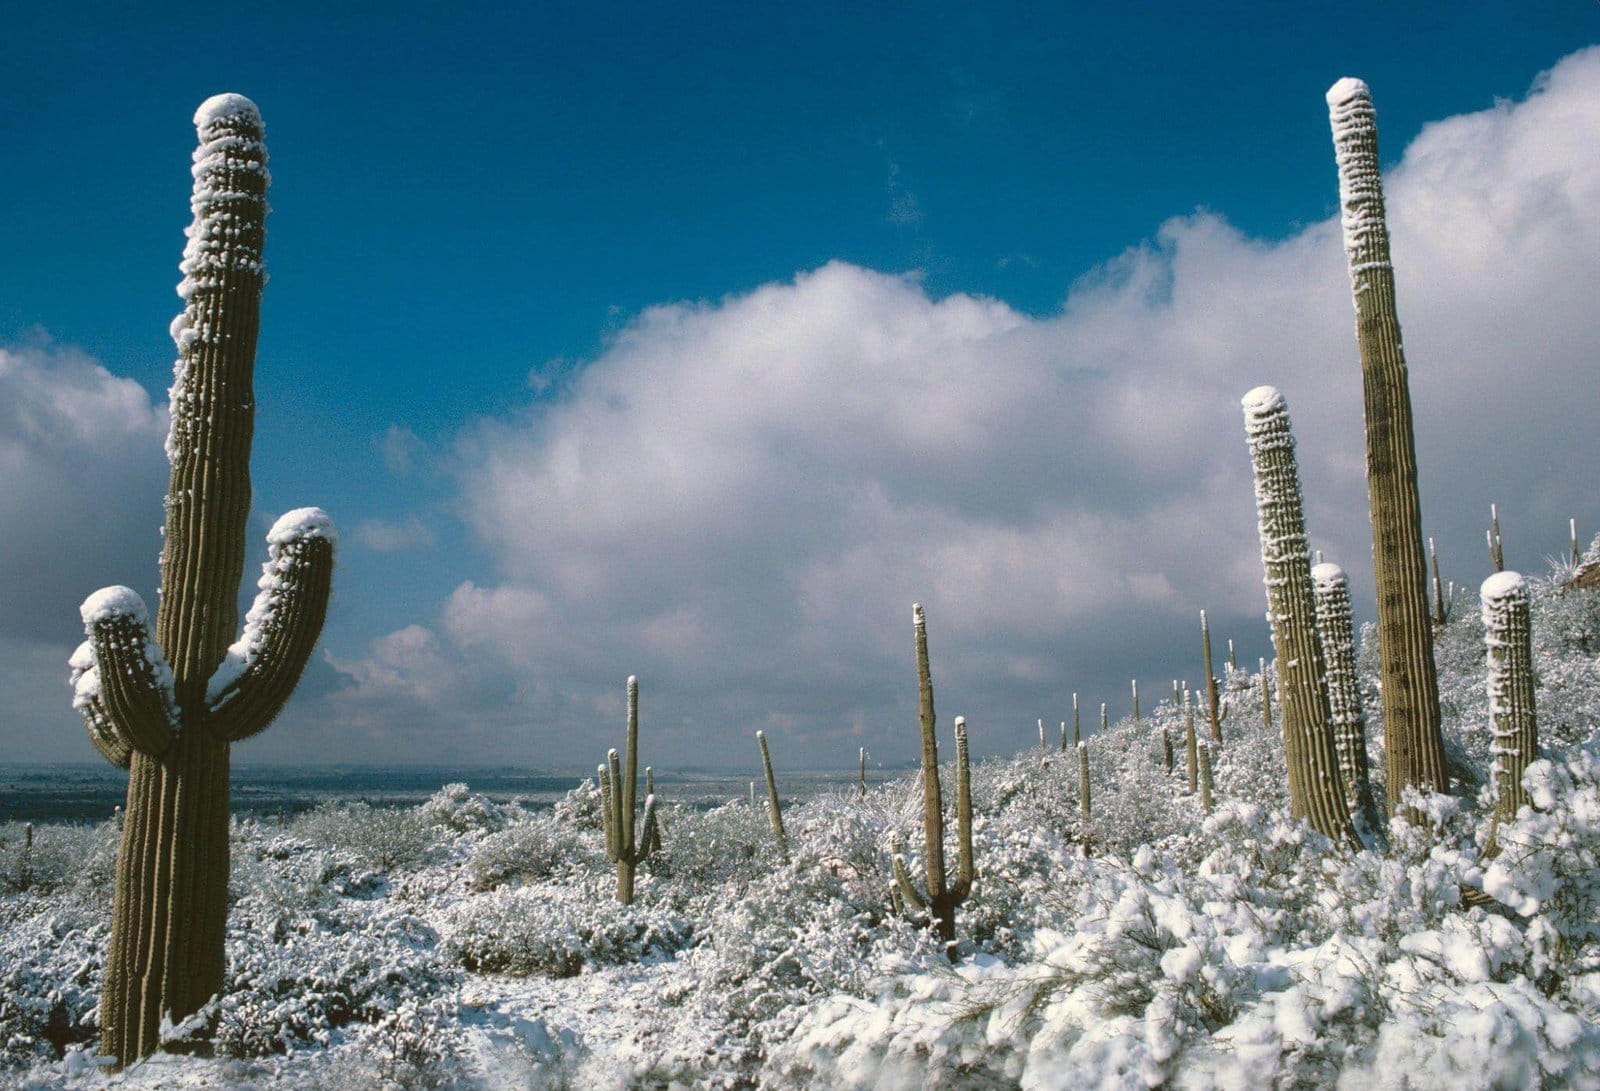 Cold Cactus